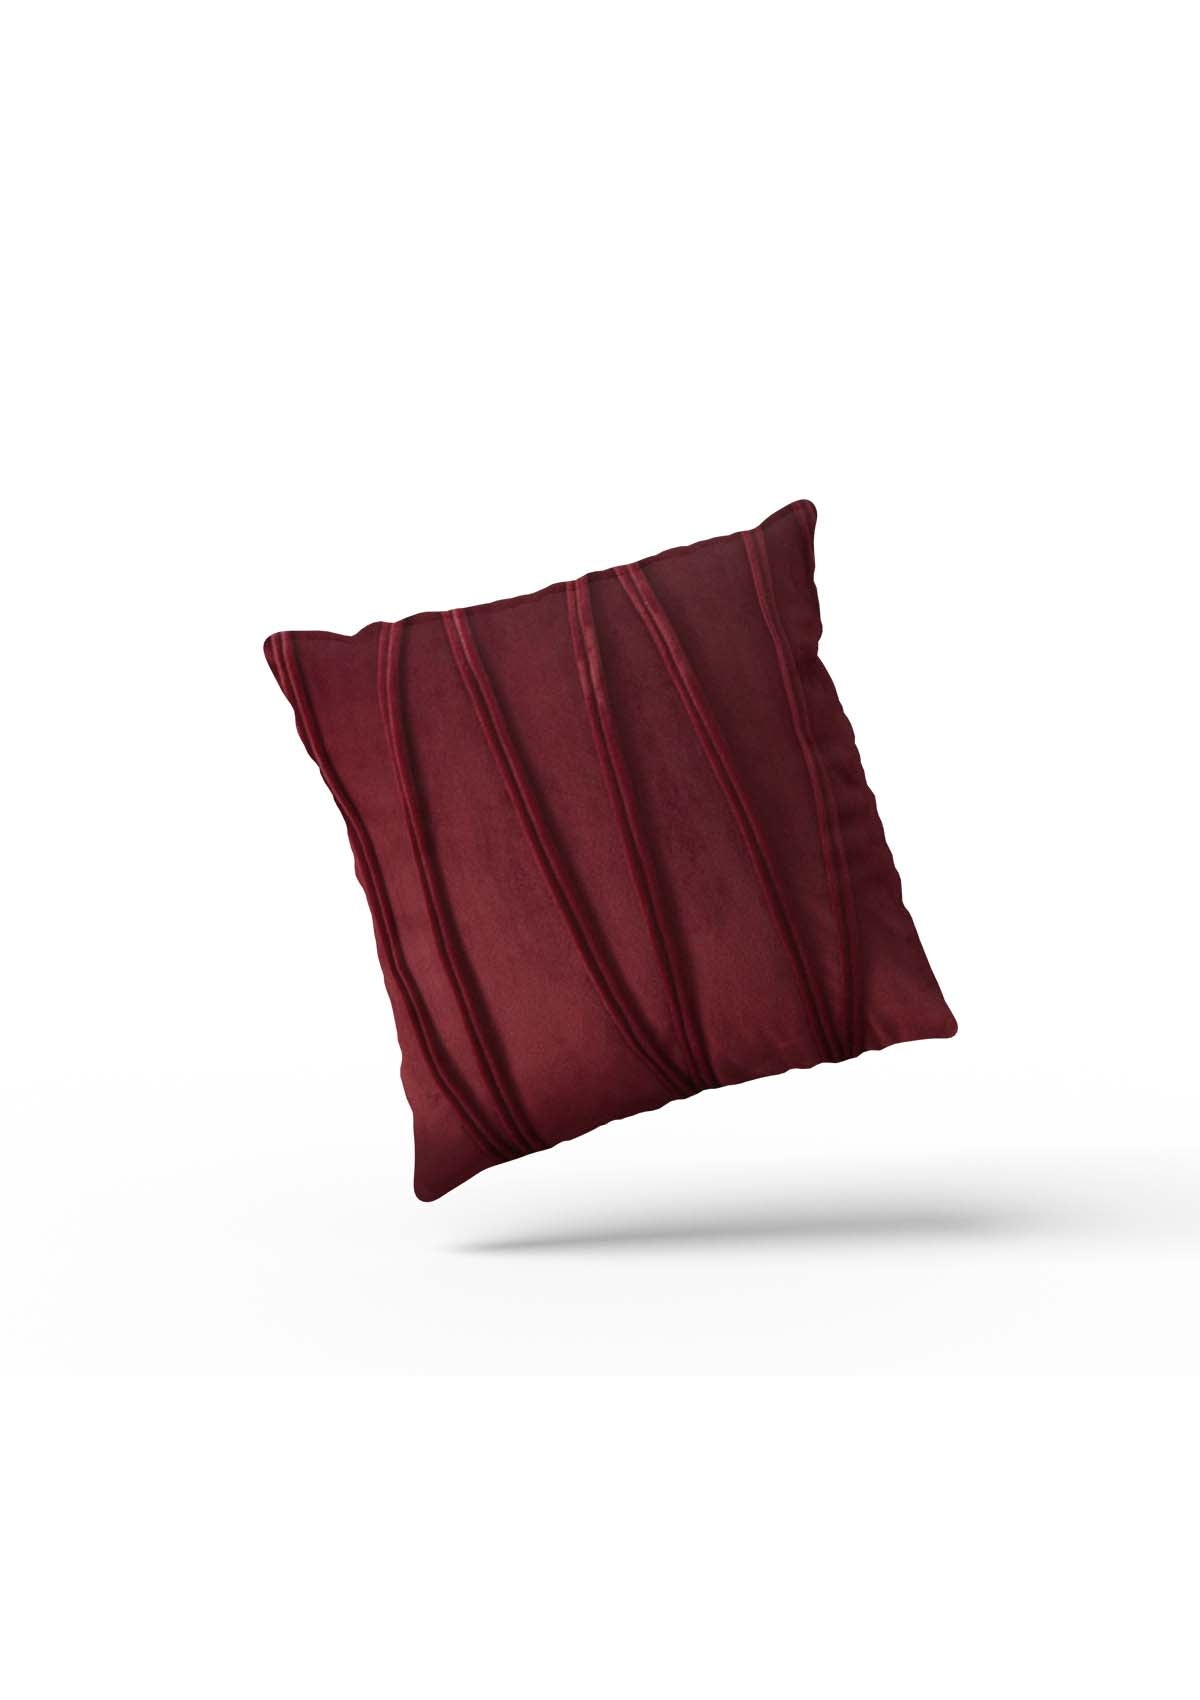  Burgundy Velvet Cushion Covers | CovermyCushion